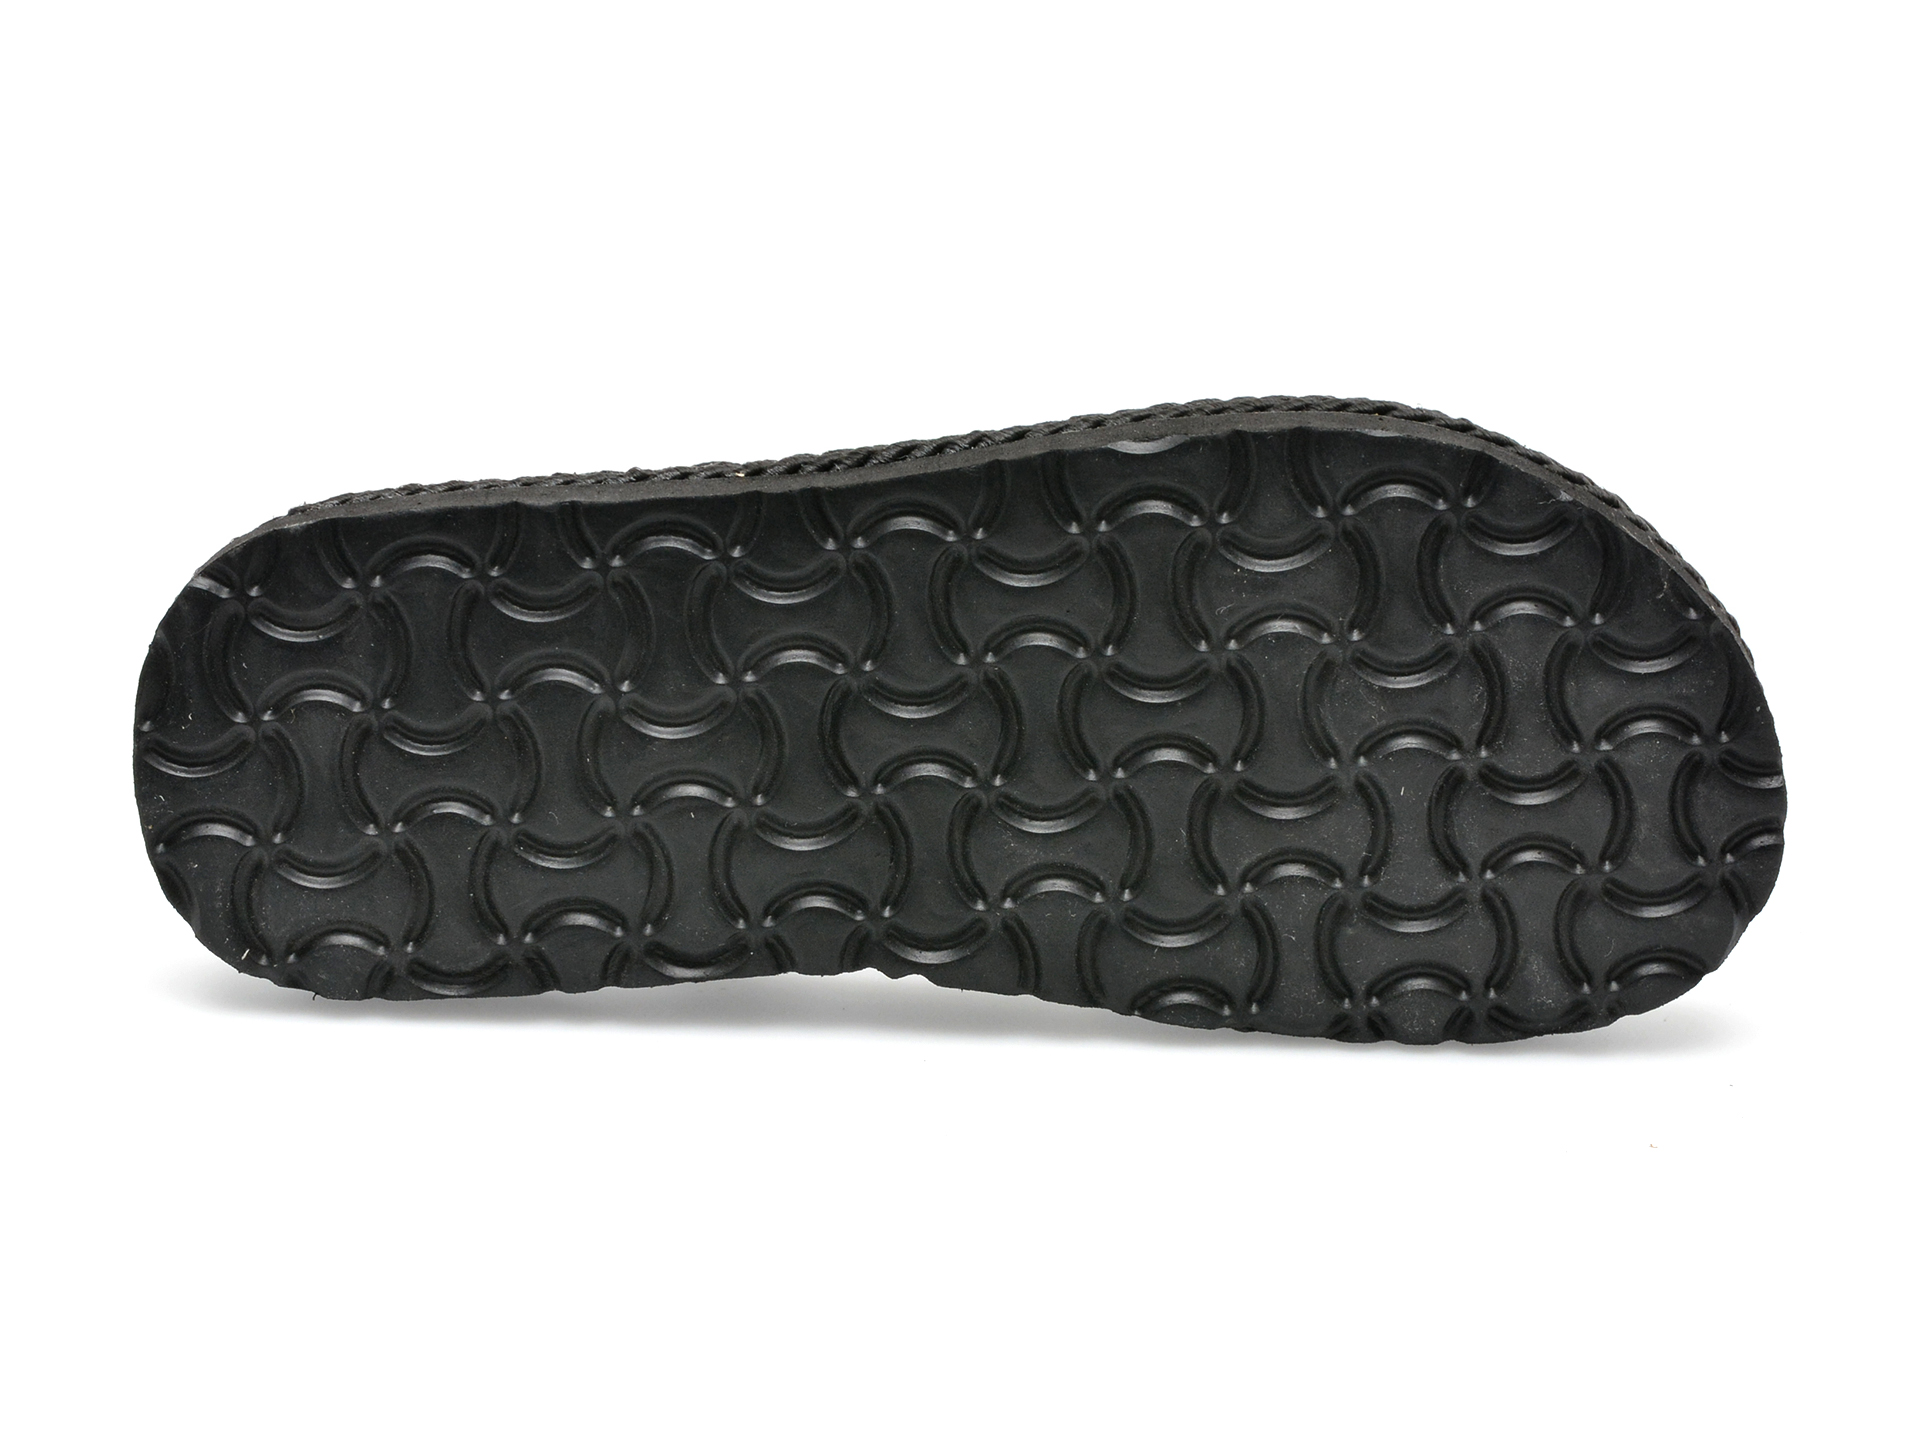 Sandale IMAGE negre, 2027, din material textil